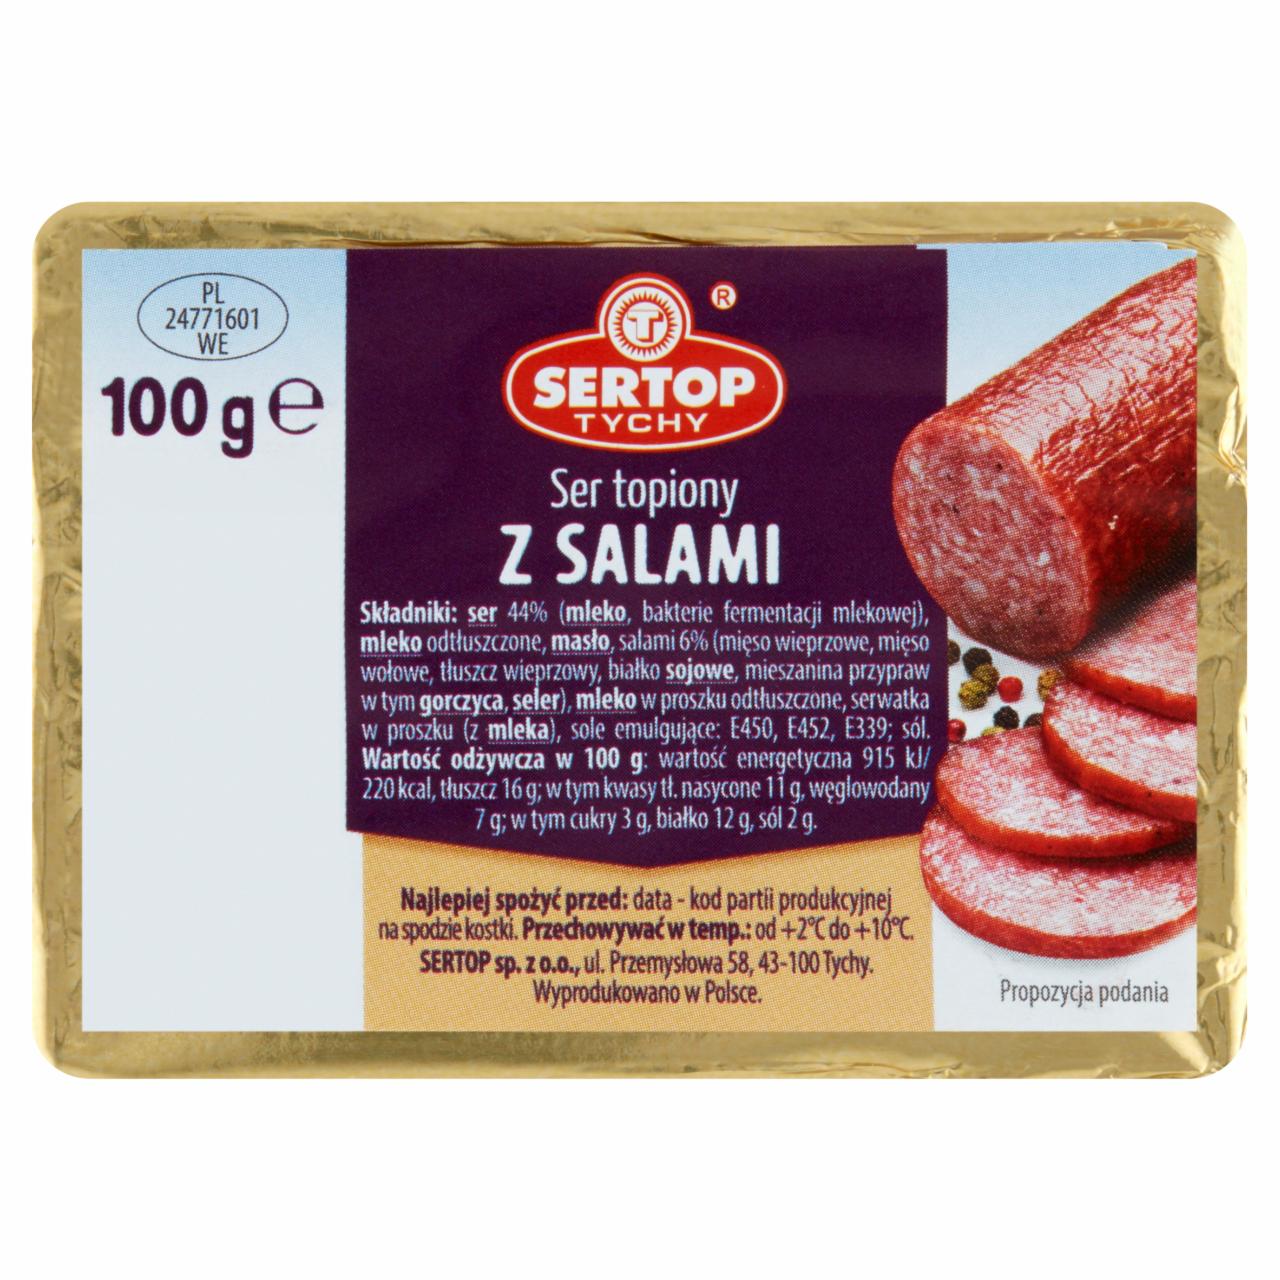 Zdjęcia - Sertop Tychy Ser topiony z salami 100 g